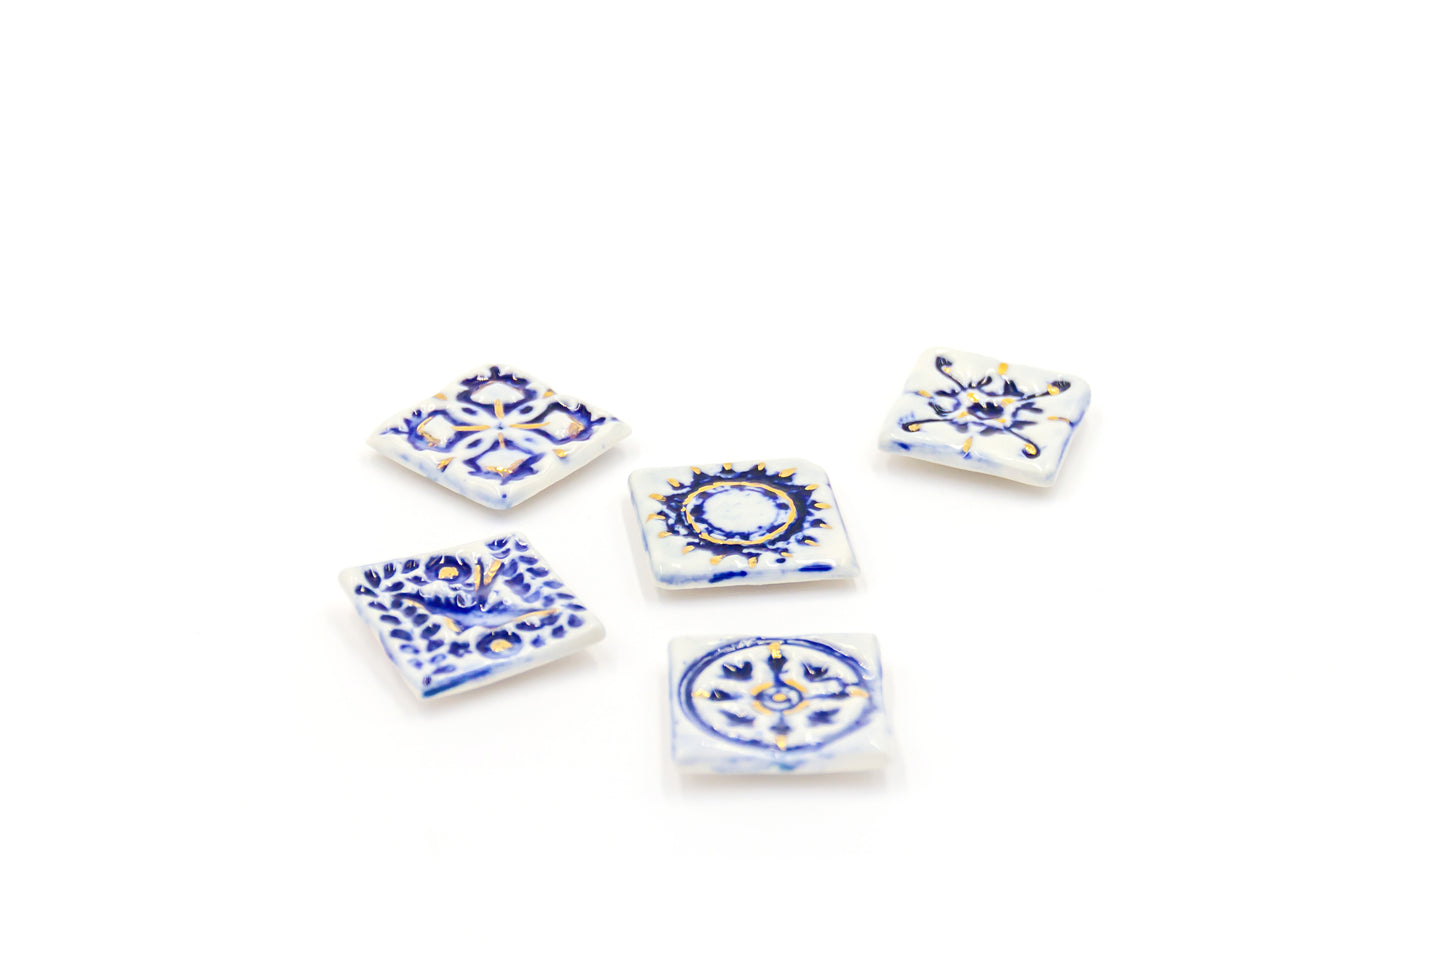 Kafelki magnesy porcelanowe ze złoceniem w stylu azulejos